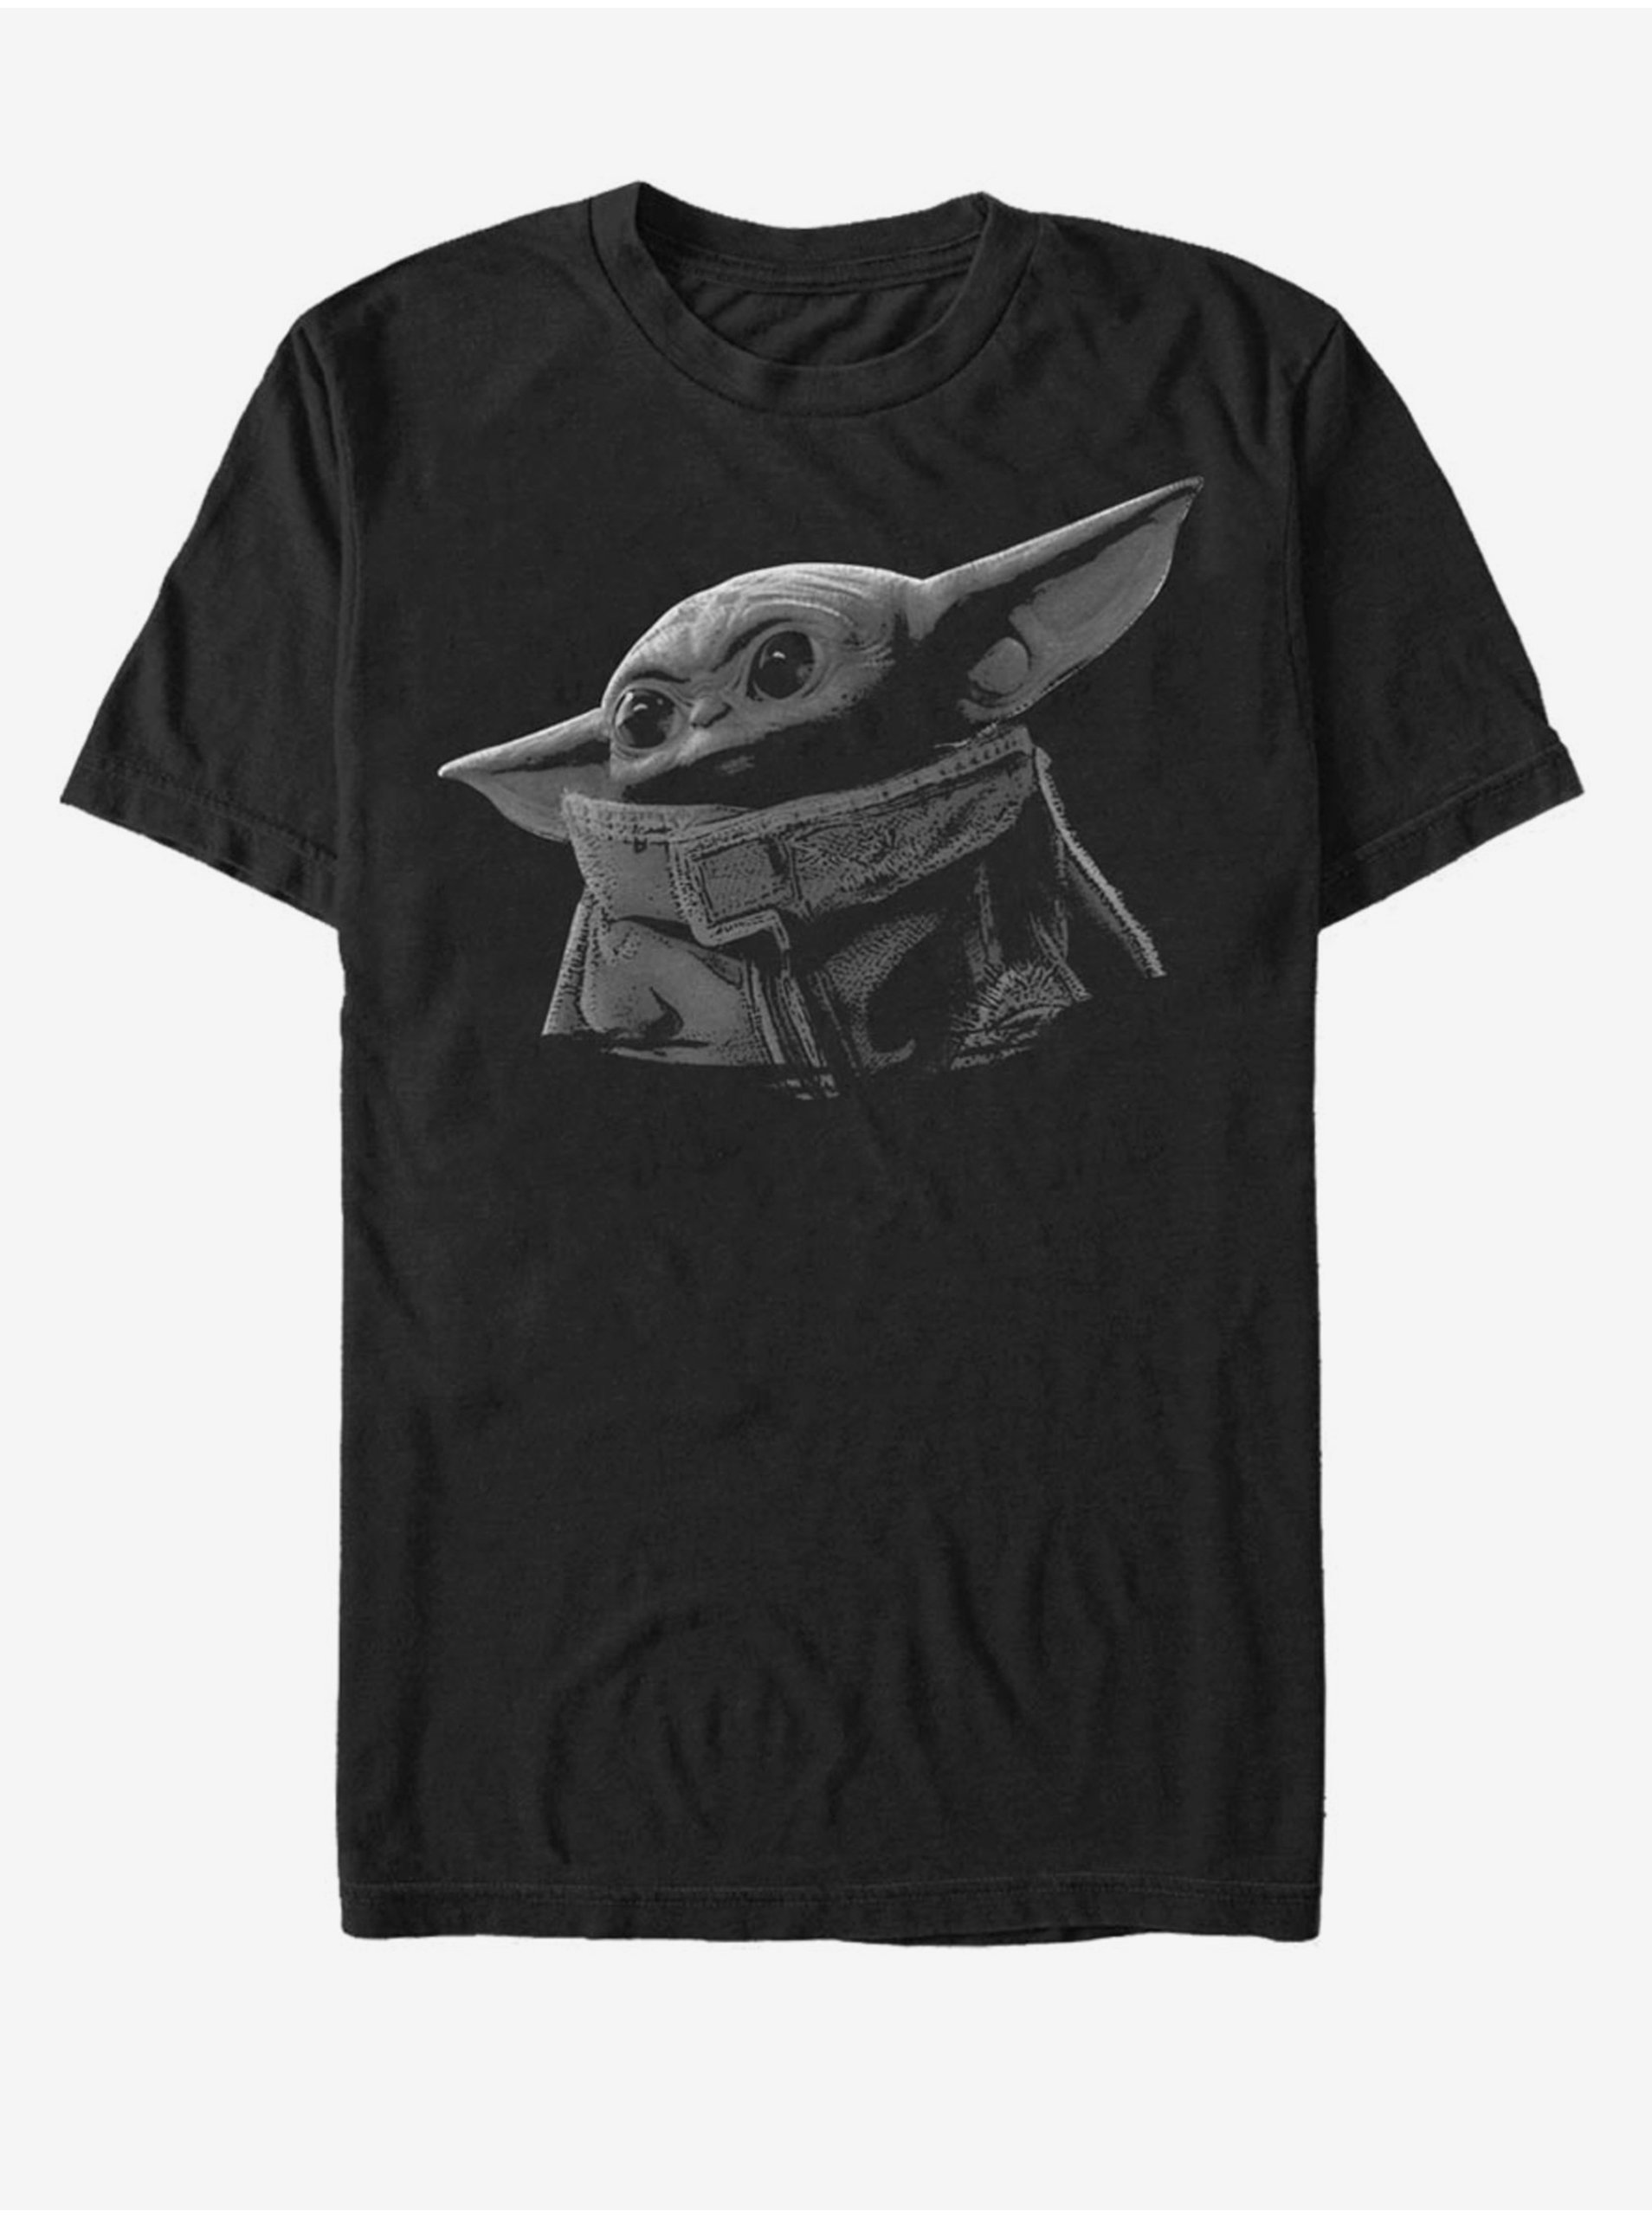 E-shop Baby Yoda ZOOT. FAN Star Wars - unisex tričko